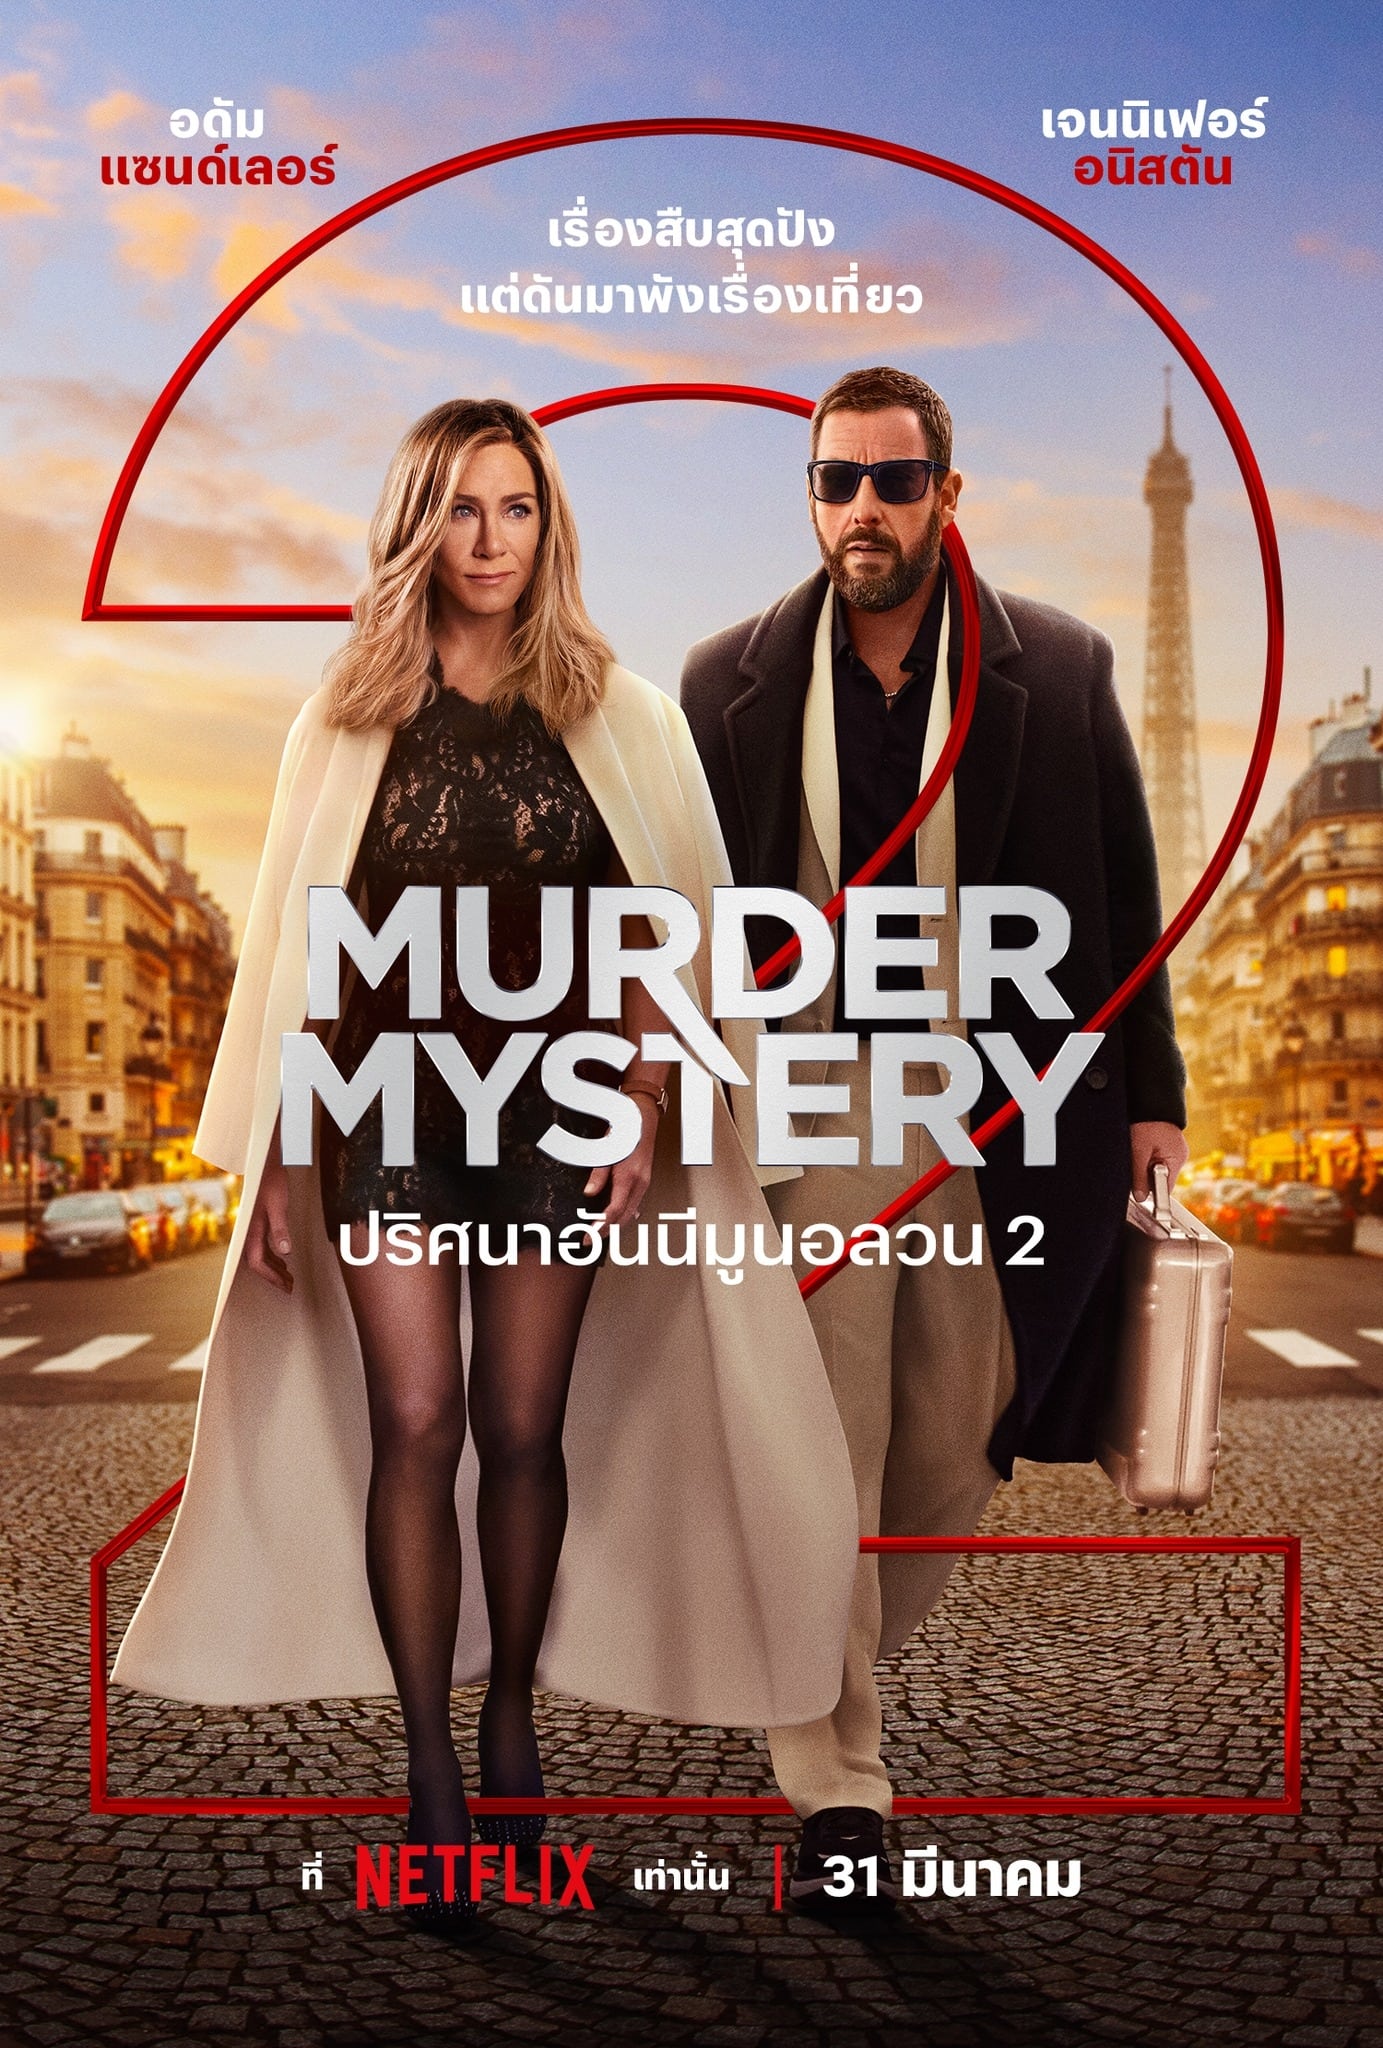 ดูหนังออนไลน์ฟรี Murder Mystery 2 ปริศนาฮันนีมูนอลวน 2